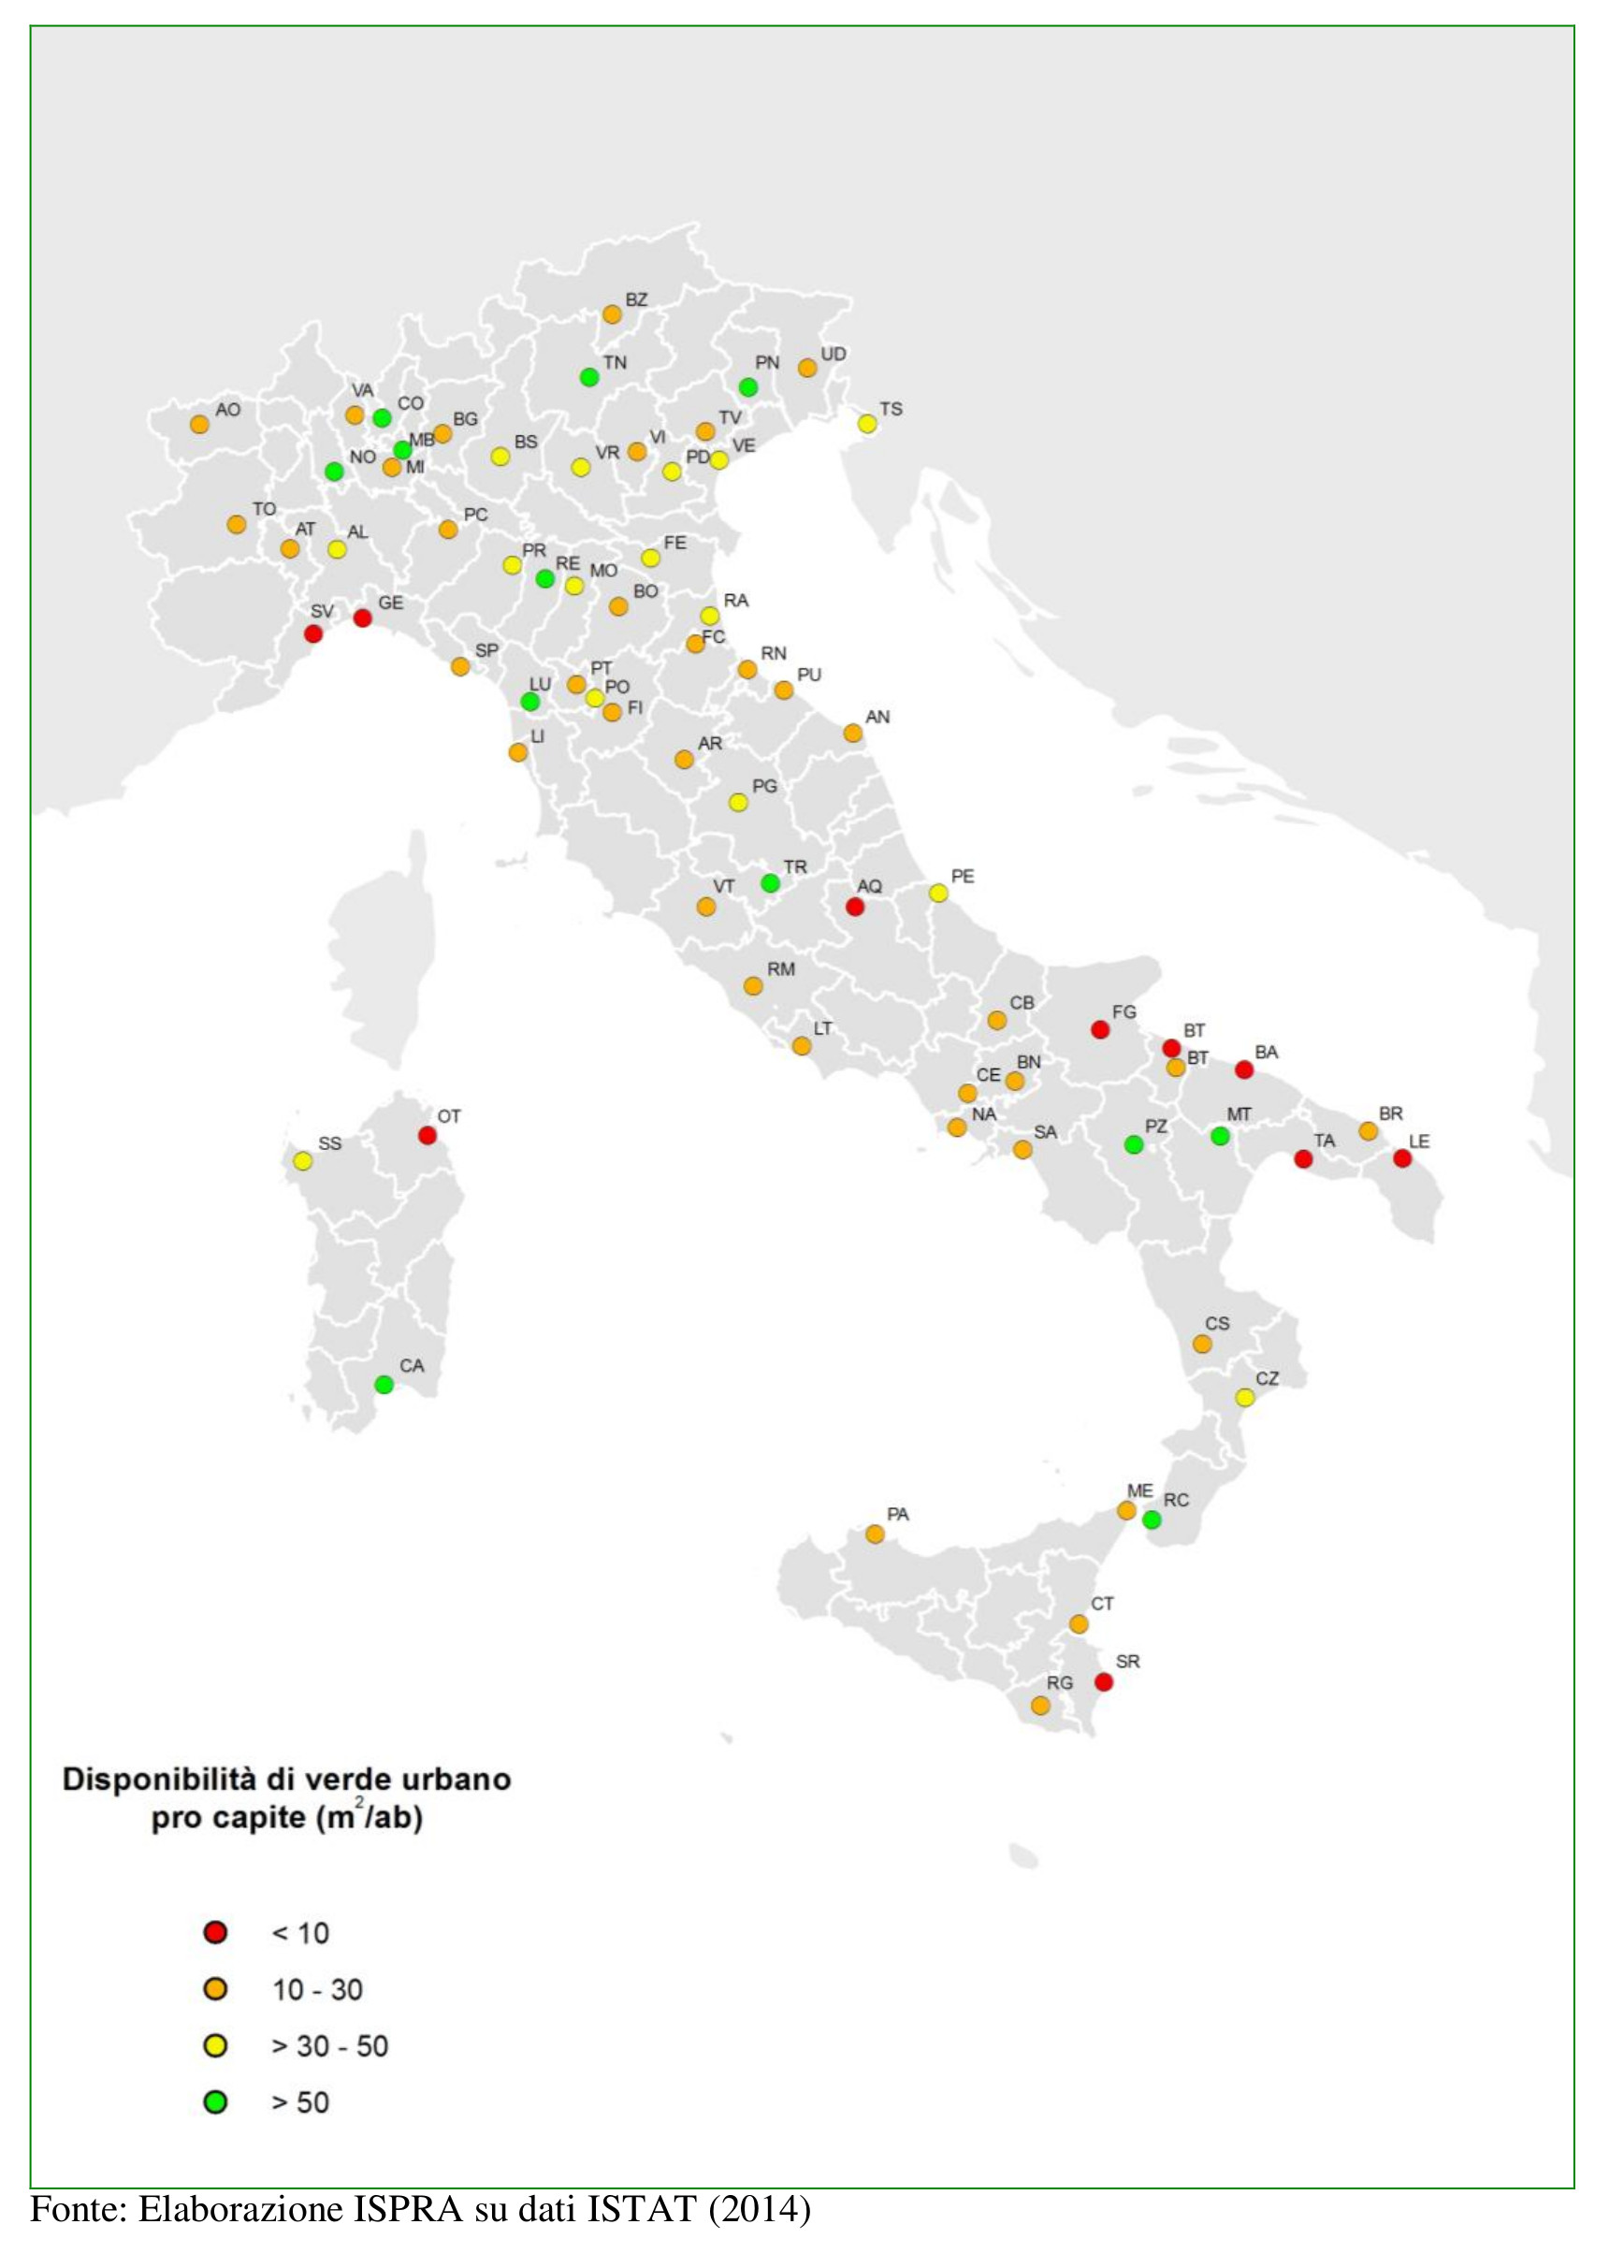 Disponibilità di verde pro capite nelle varie città Italiane, secondo il Documento di ISPRA 2014